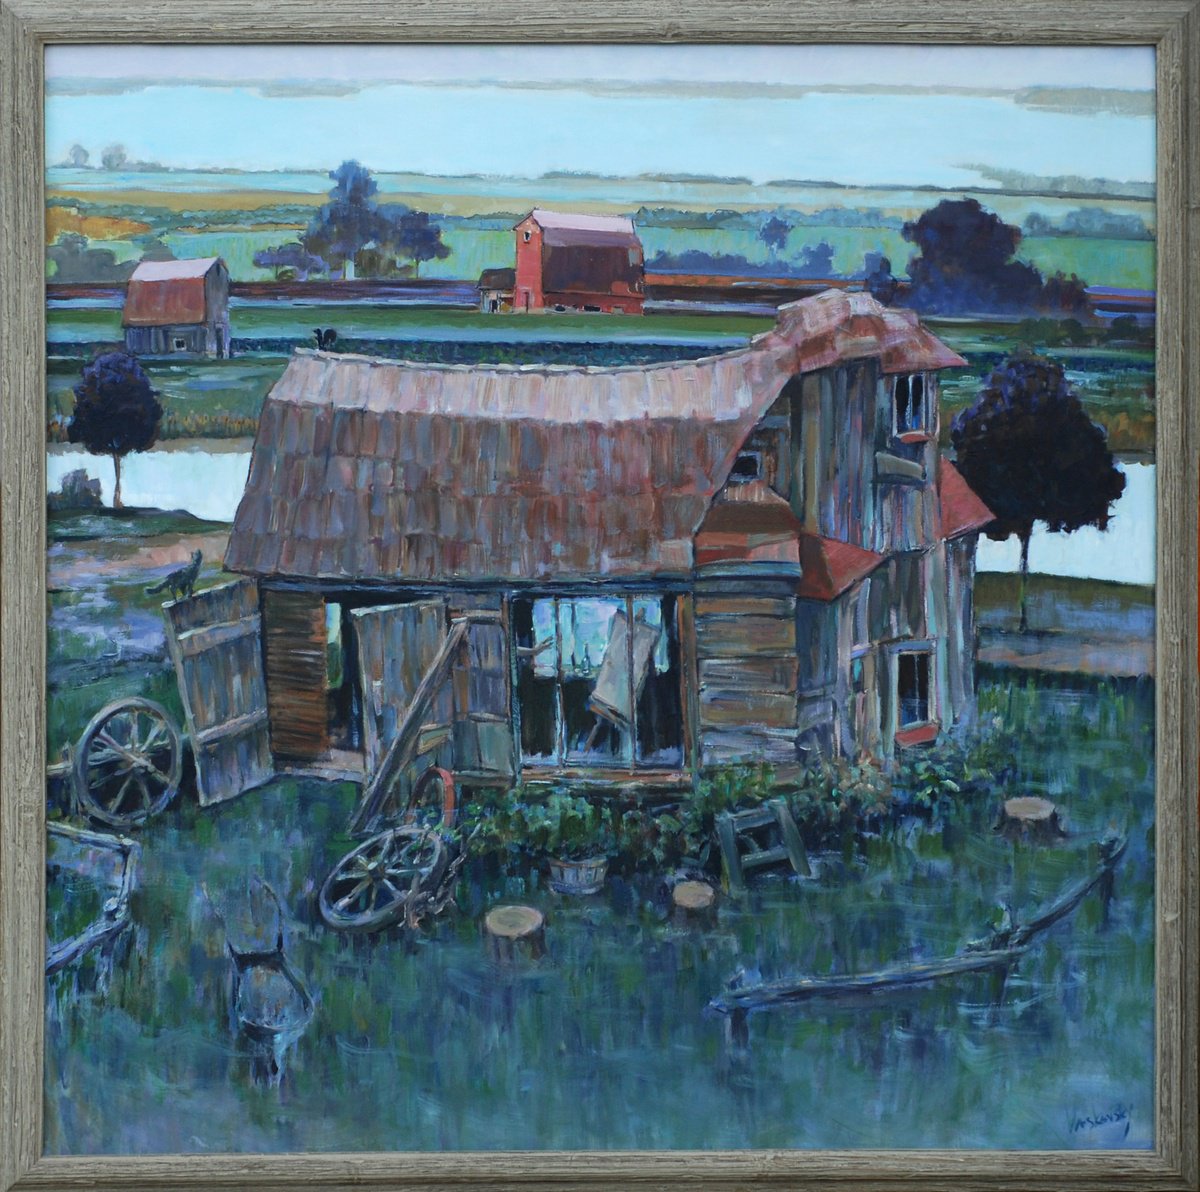 My Barn Studio in Prince Edward County by Vadim Vaskovsky